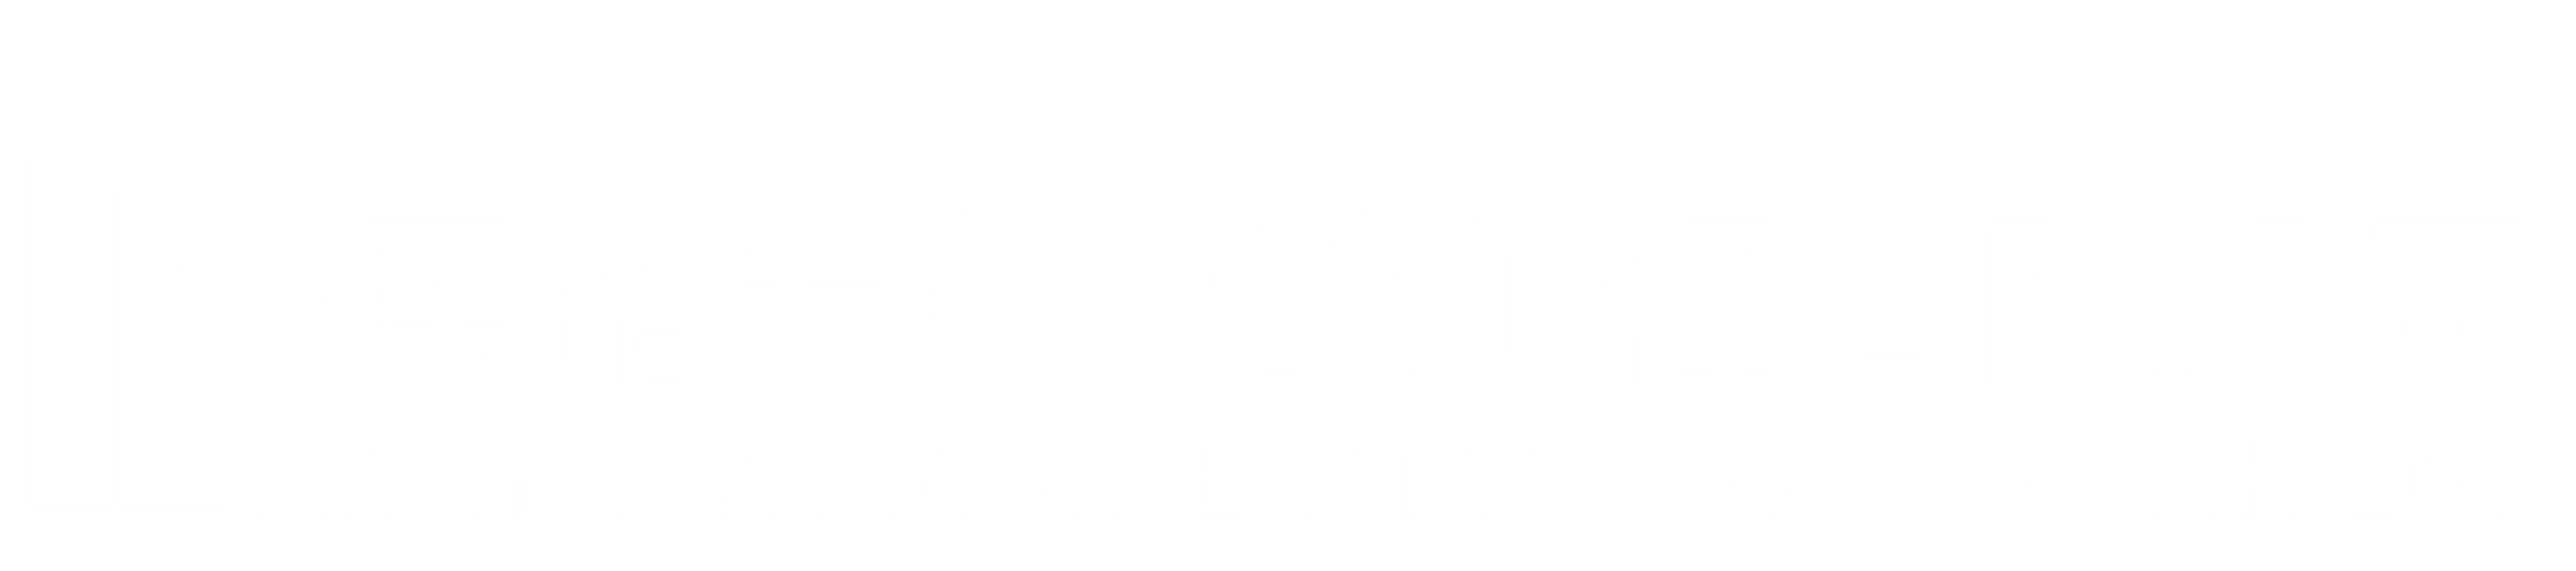 安居鋁窗 - Anchor Window Engineering Co.,(HK)Ltd.